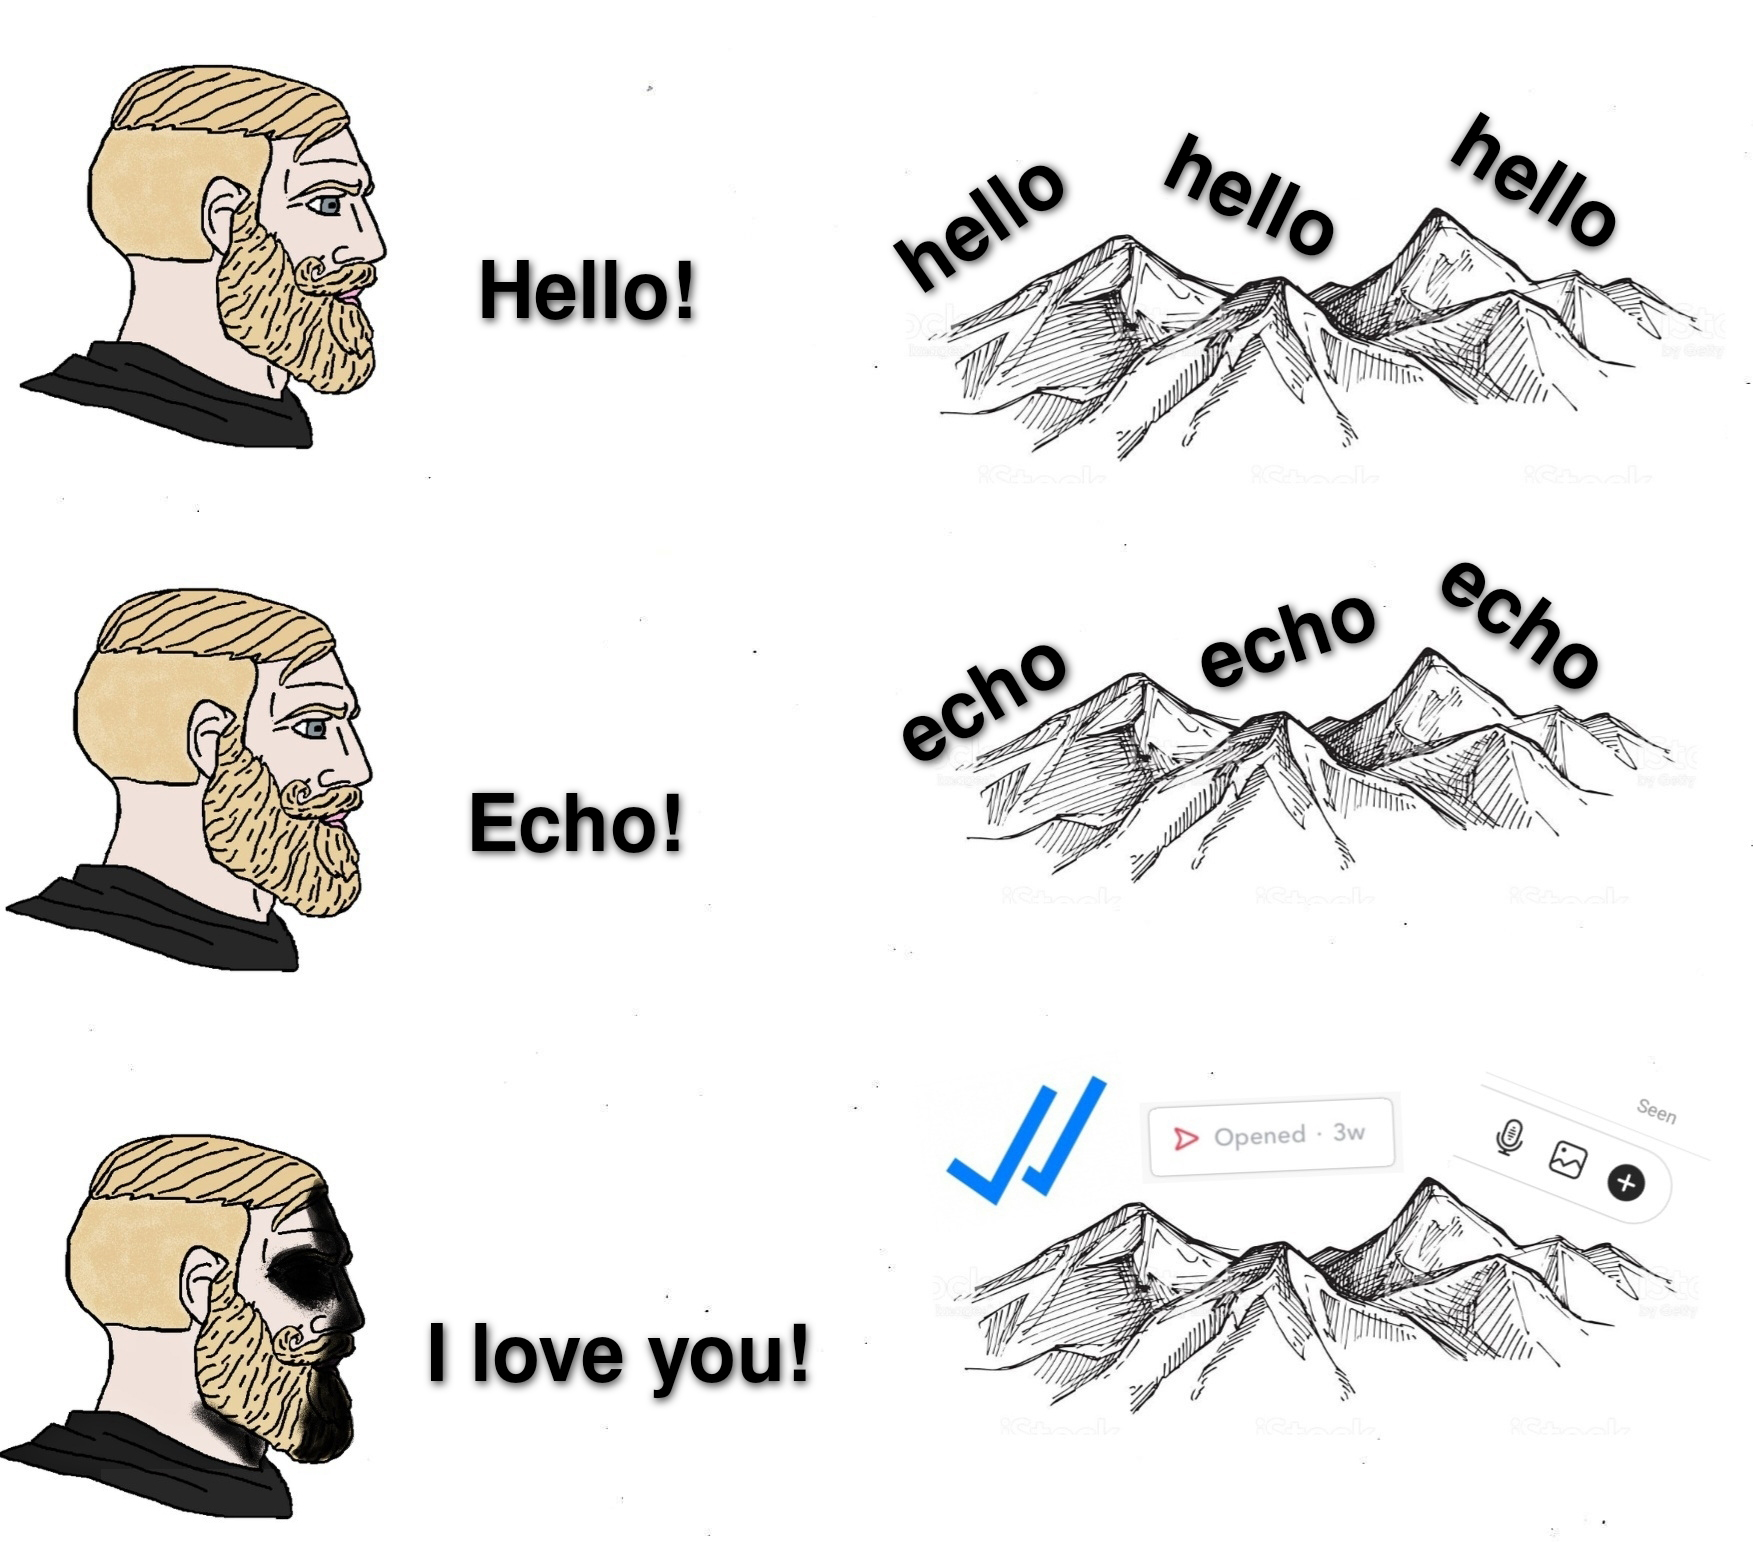 funny gaming memes - Hello - hello hello Hello! hello echo echo echo Echo! Opened I love you!